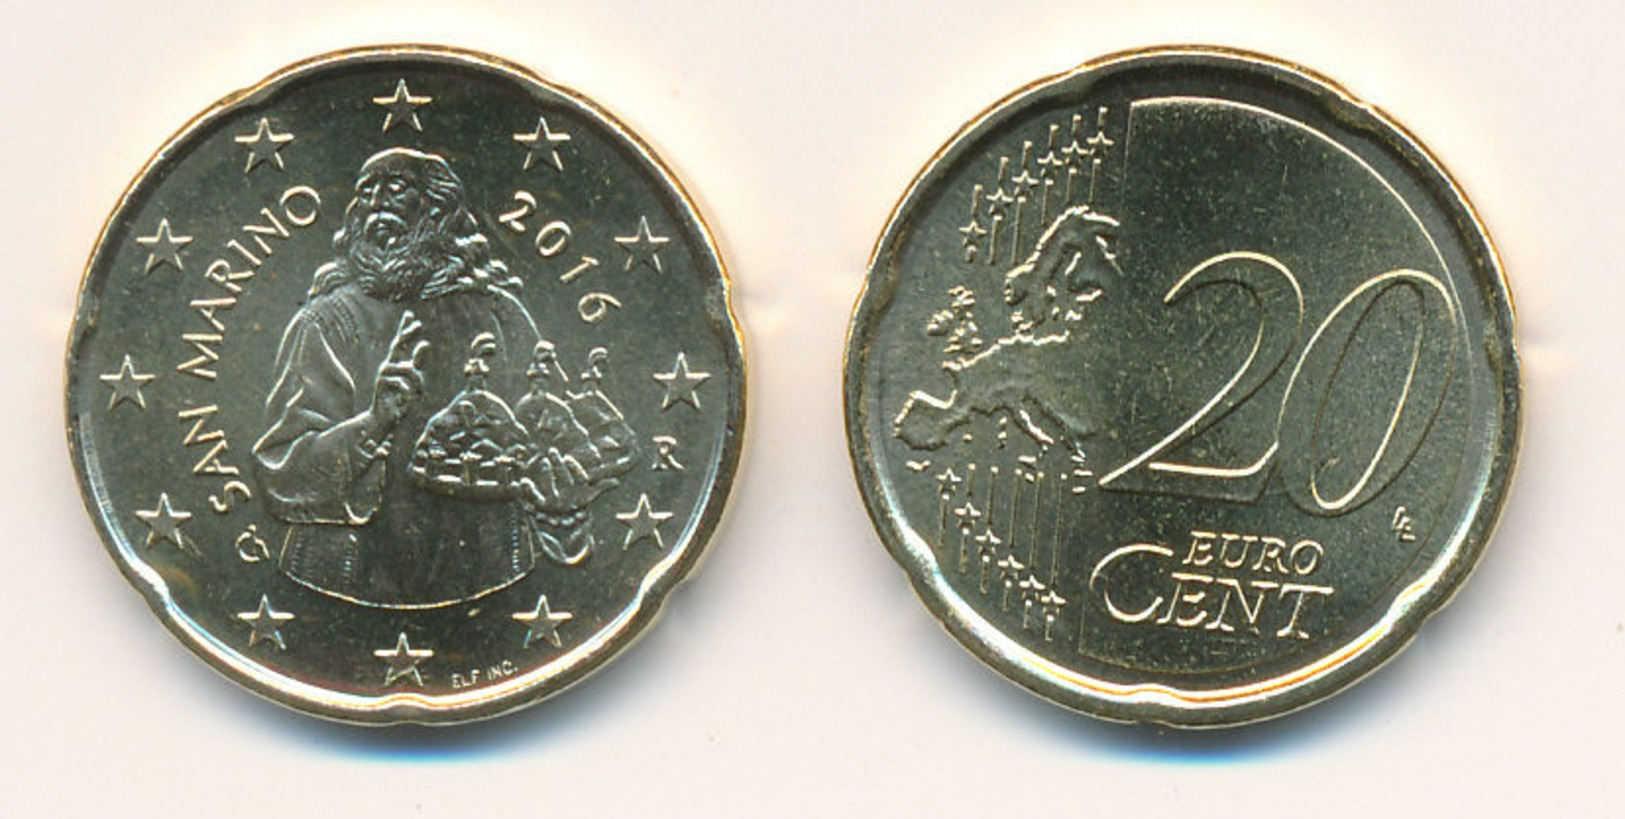 SAN MARINO 2016 - Original Oficial 20 Céntimos Moneda De Curso - UNCIRCULATED - San Marino